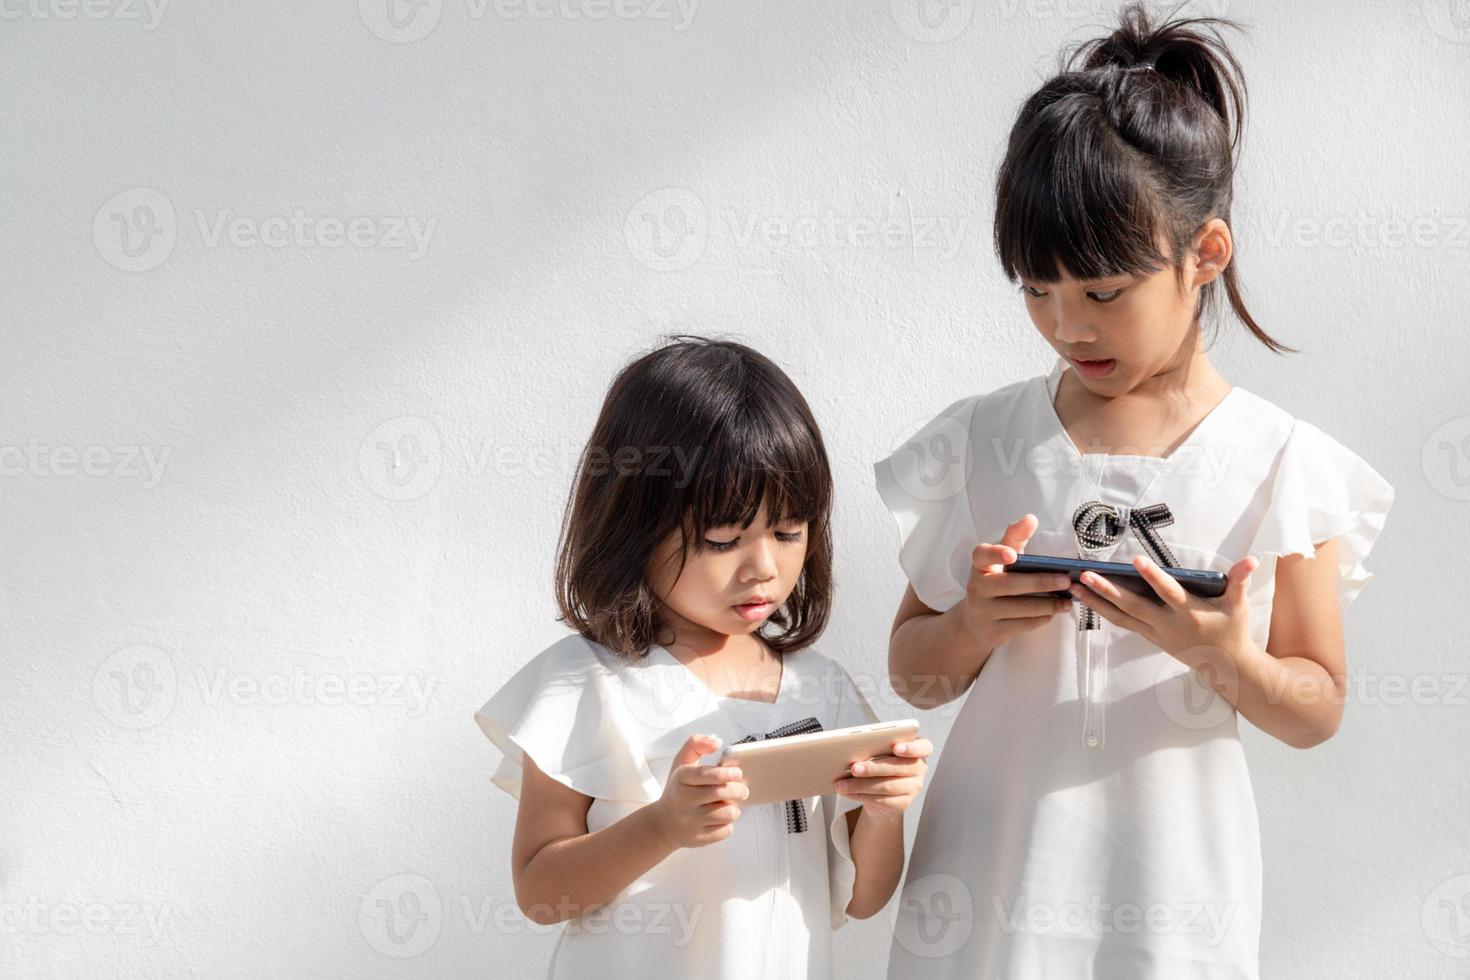 concept kinderen en gadgets. twee weinig meisjes broers en zussen zussen kijken Bij de telefoon. ze houden een smartphone kijk maar videos, leren, Speel spellen, spreken online. internet voor kinderen. foto